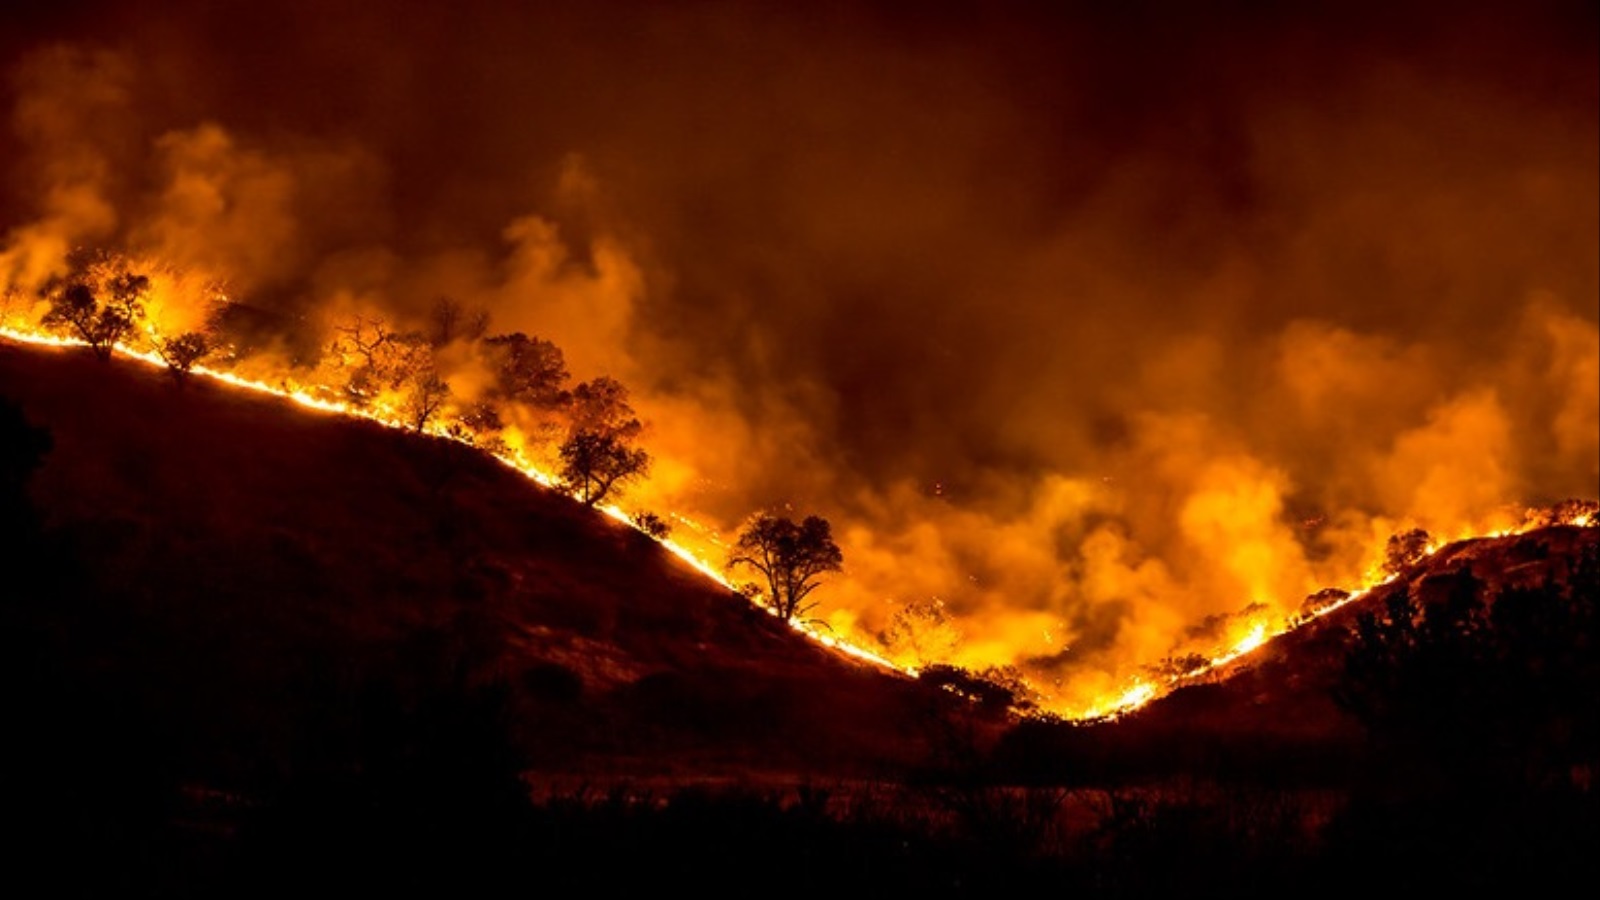 ‪ولاية كاليفورنيا الأميركية إحدى المناطق التي تشهد حرائق واسعة سنويا‬ (فليكرز)